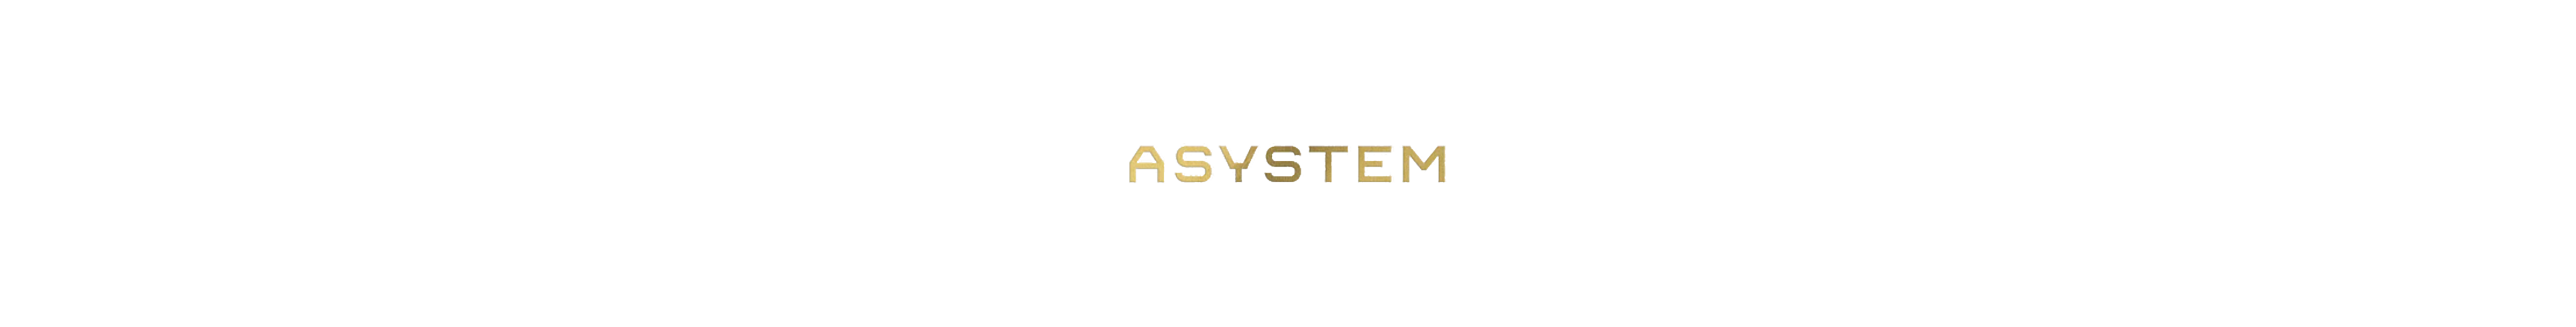 asystem